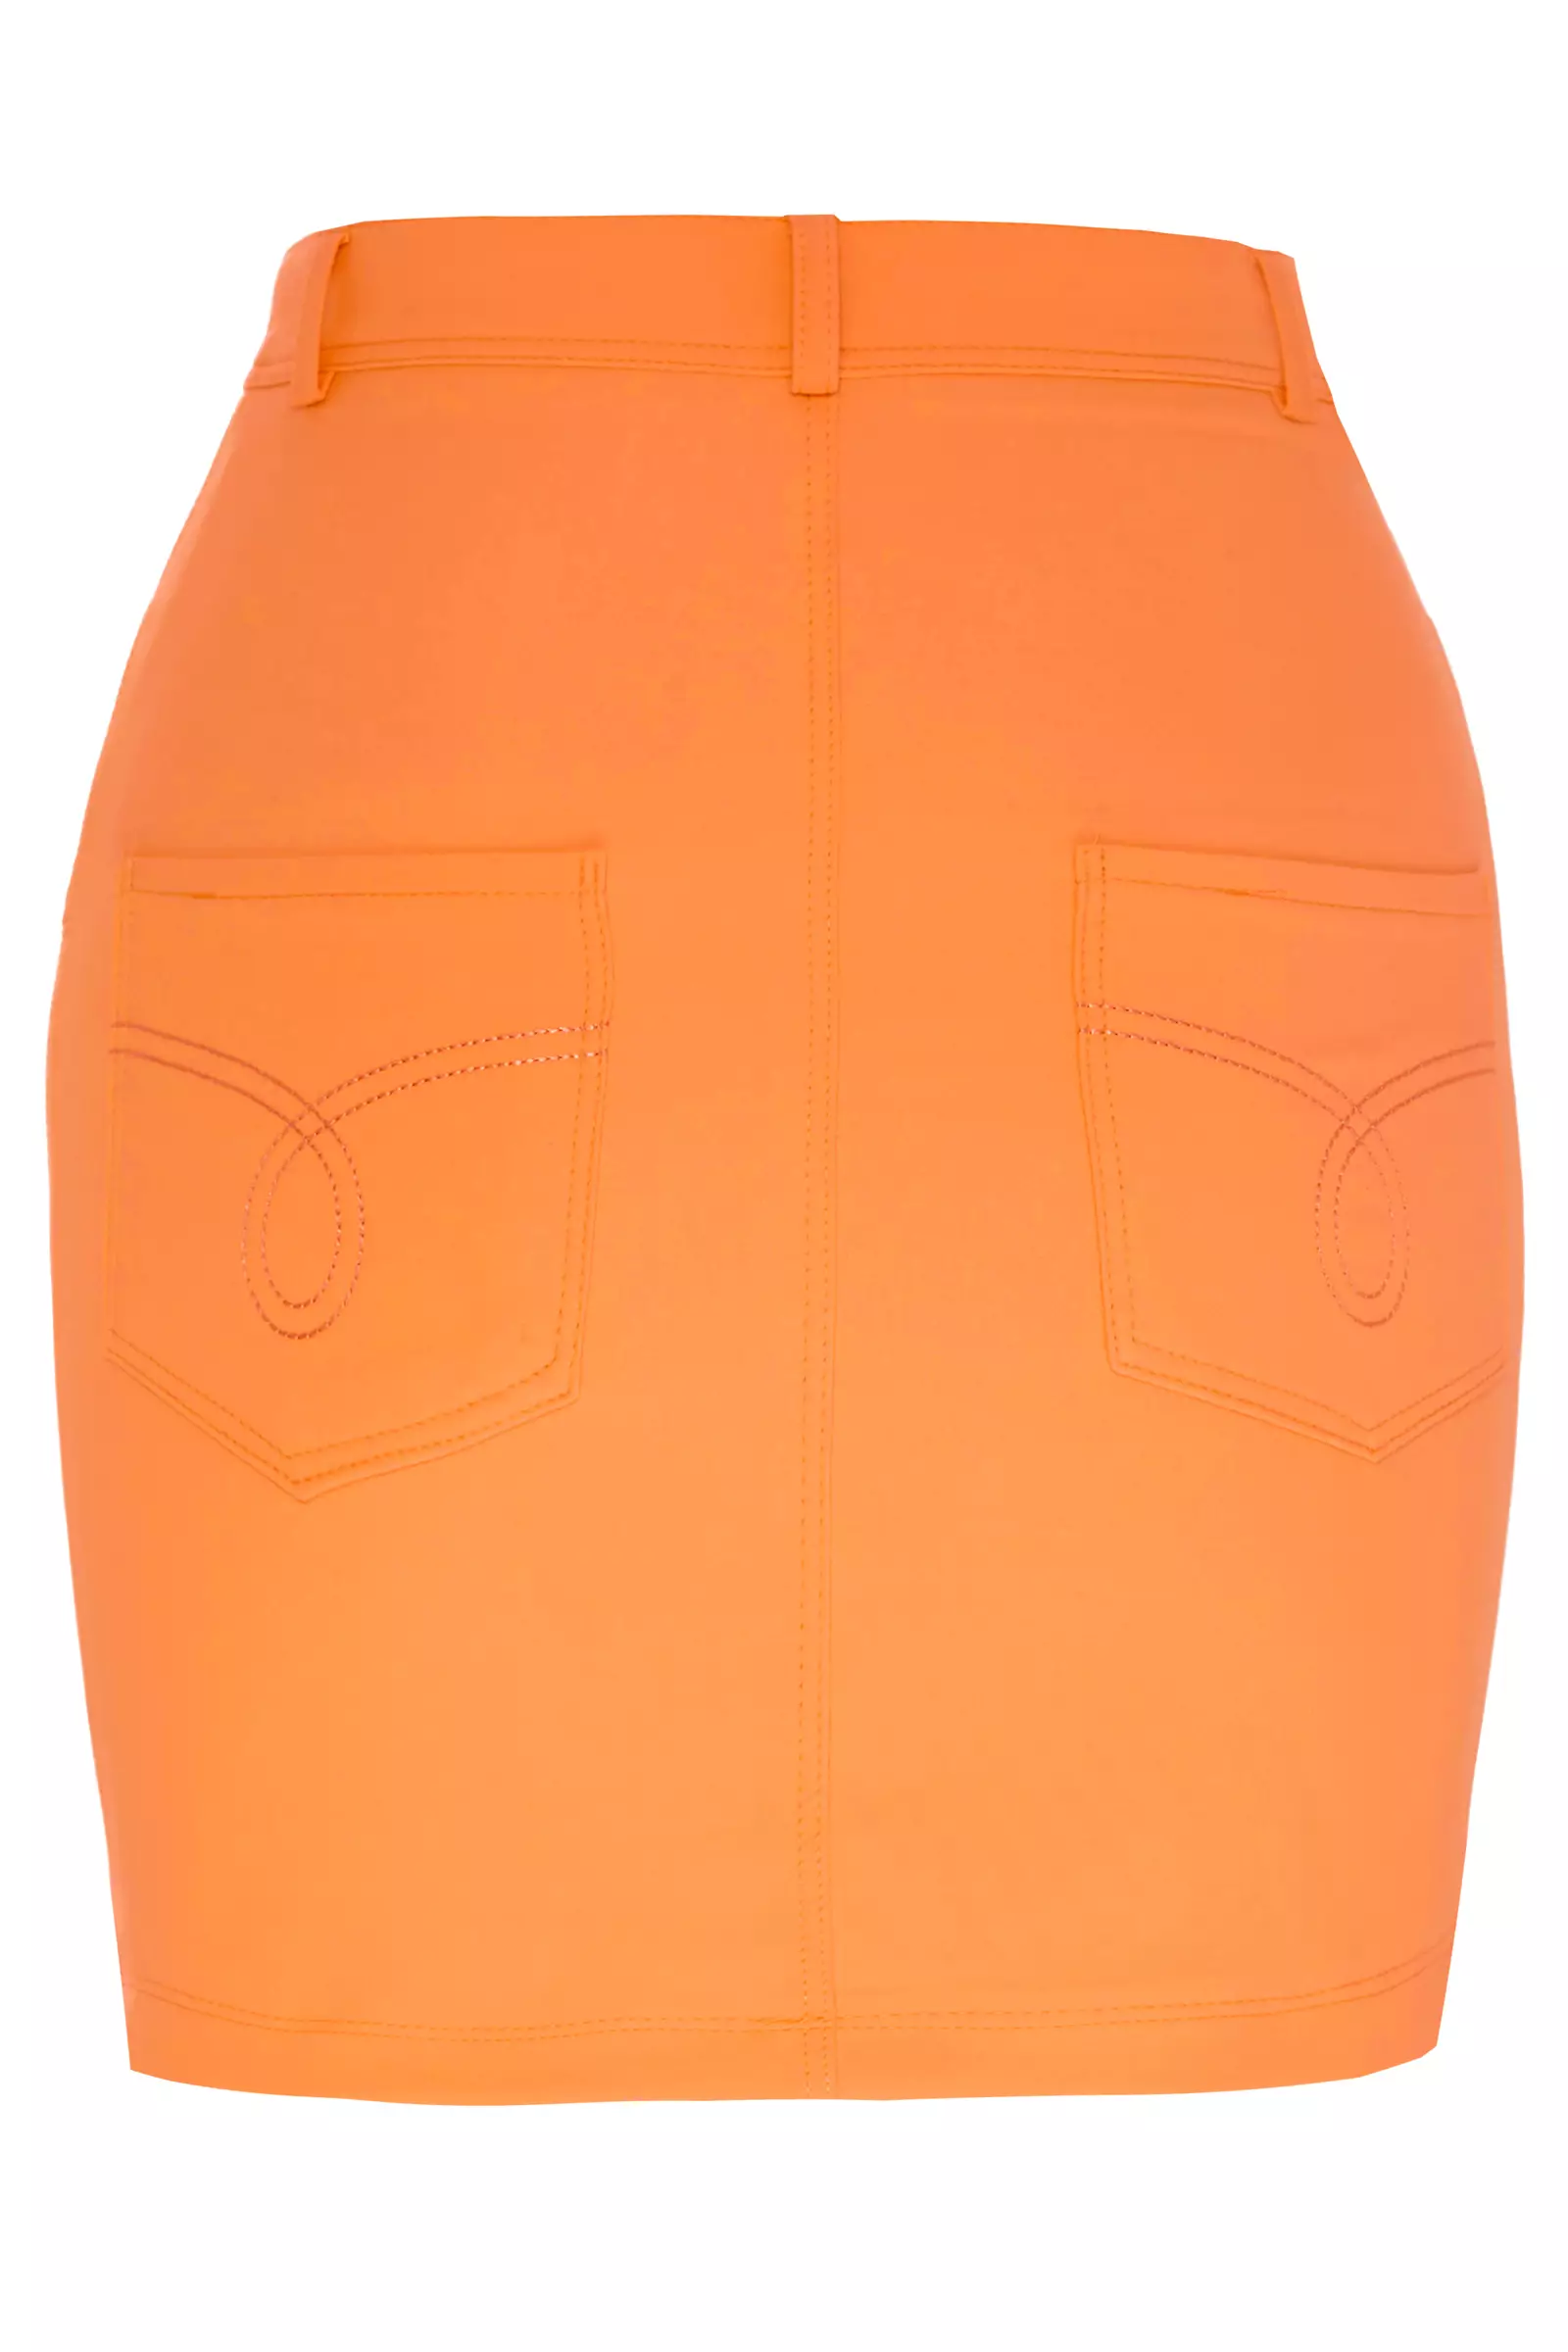 Orange crepe mini skirt